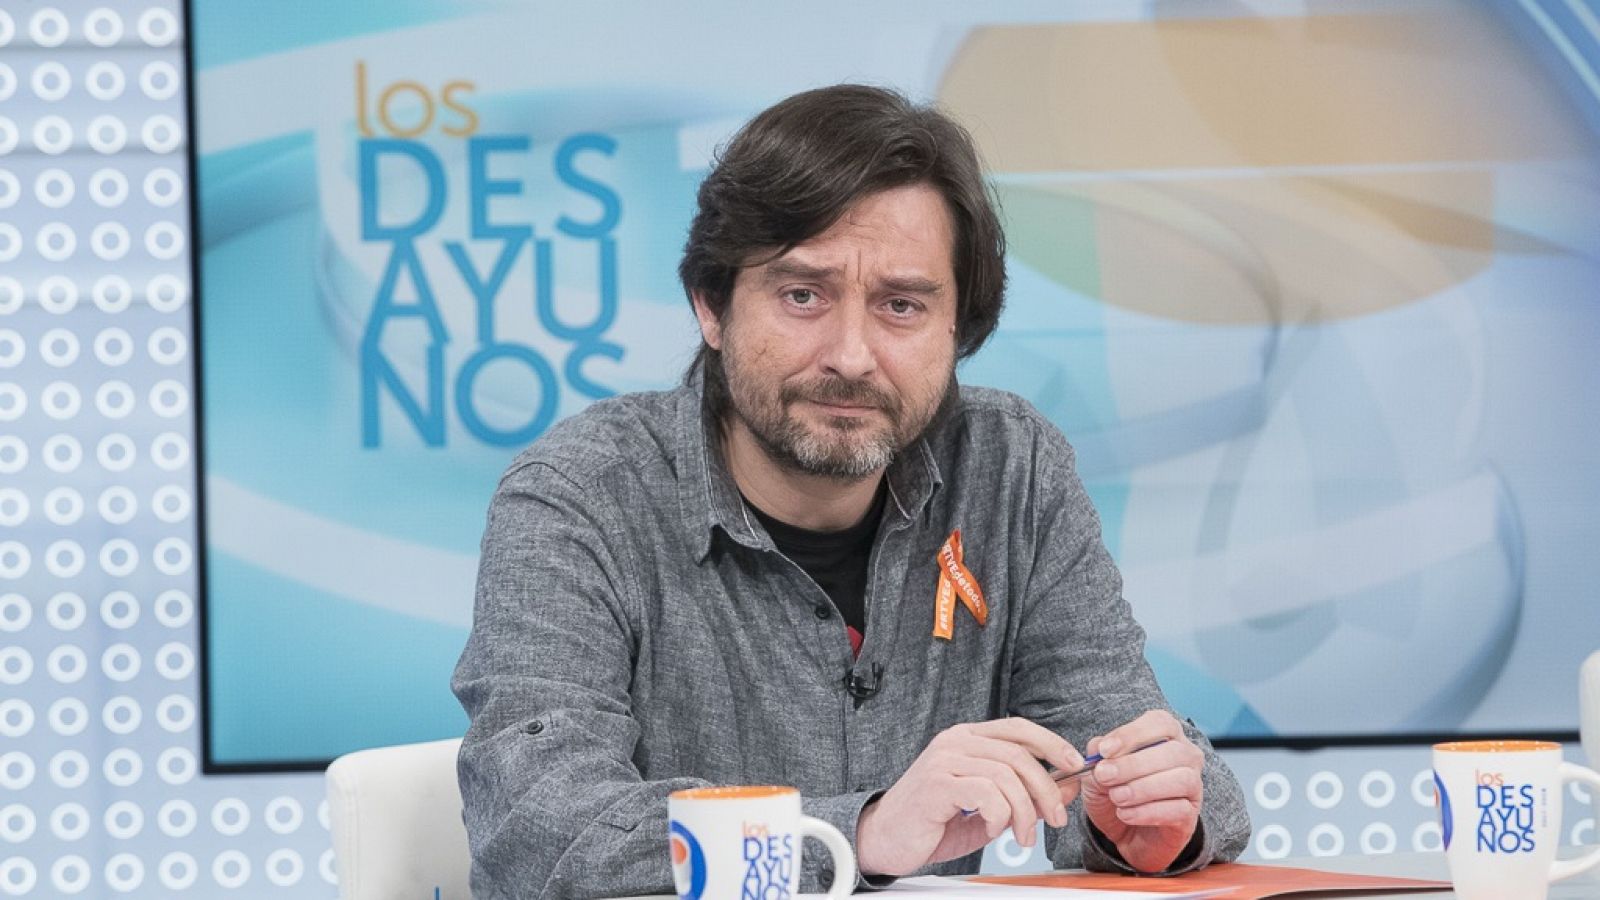 Los desayunos de TVE - Rafael Mayoral, Secretario de Sociedad civil y Movimiento popular de Podemos